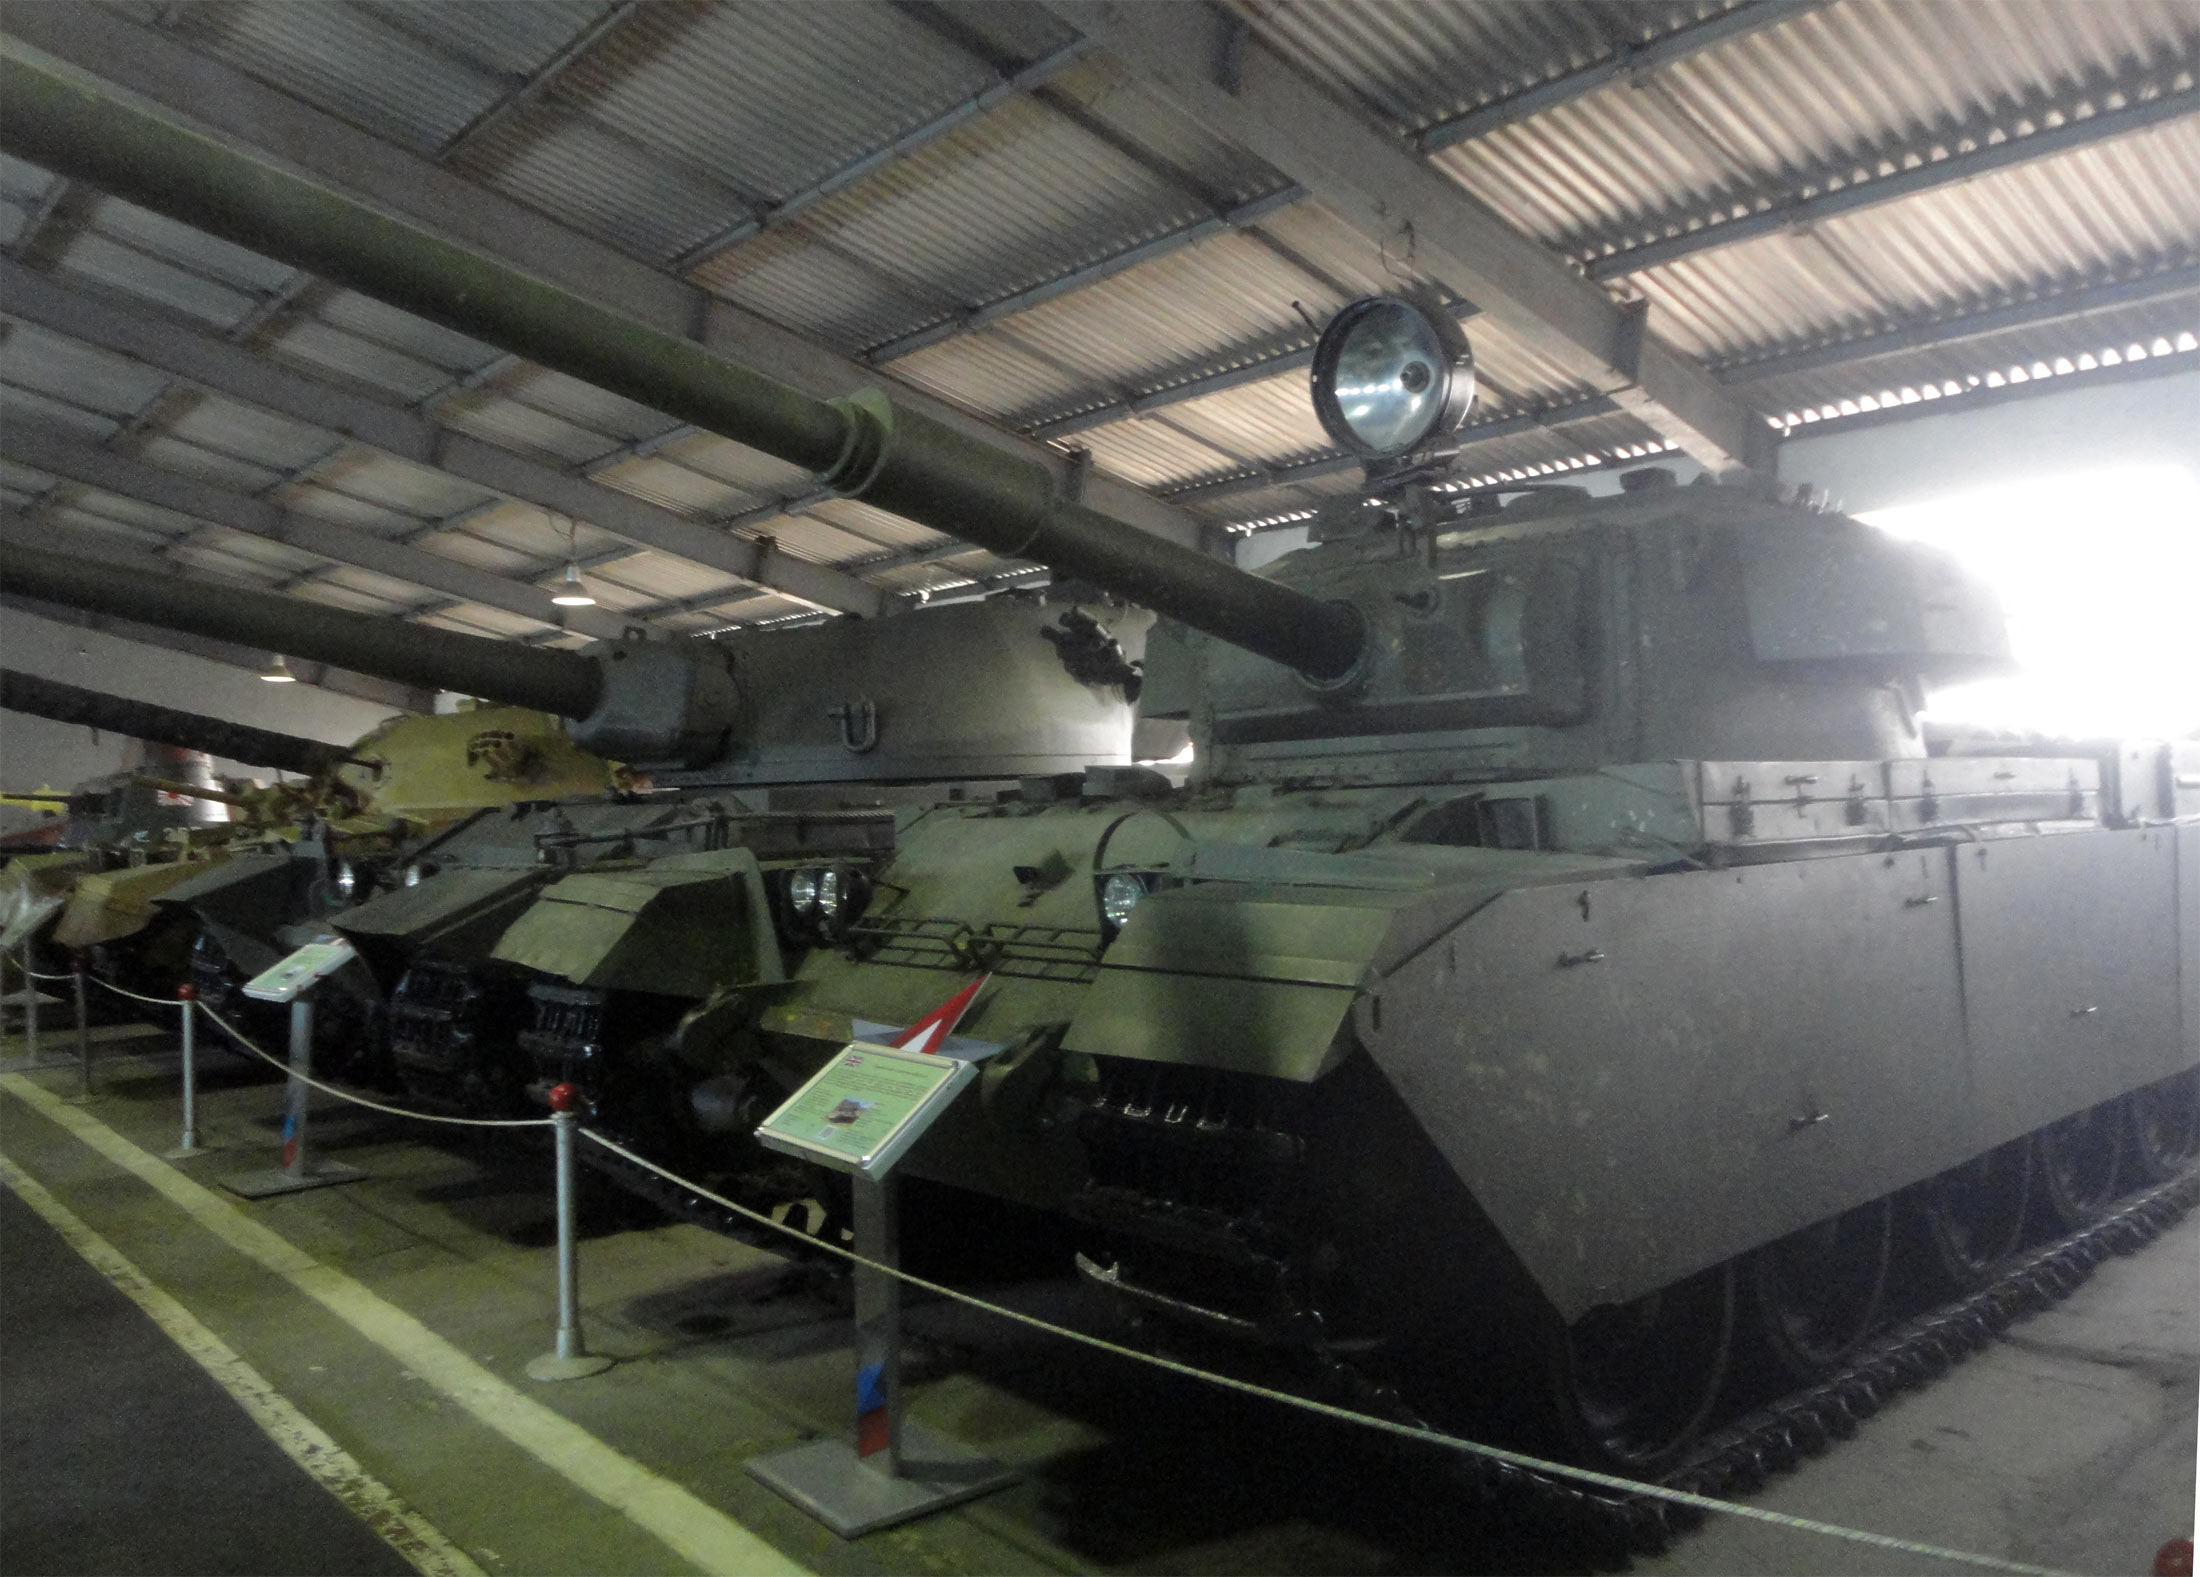 British main tank Centurion Mk 13 tank museum, Kubinka photo, 2016.